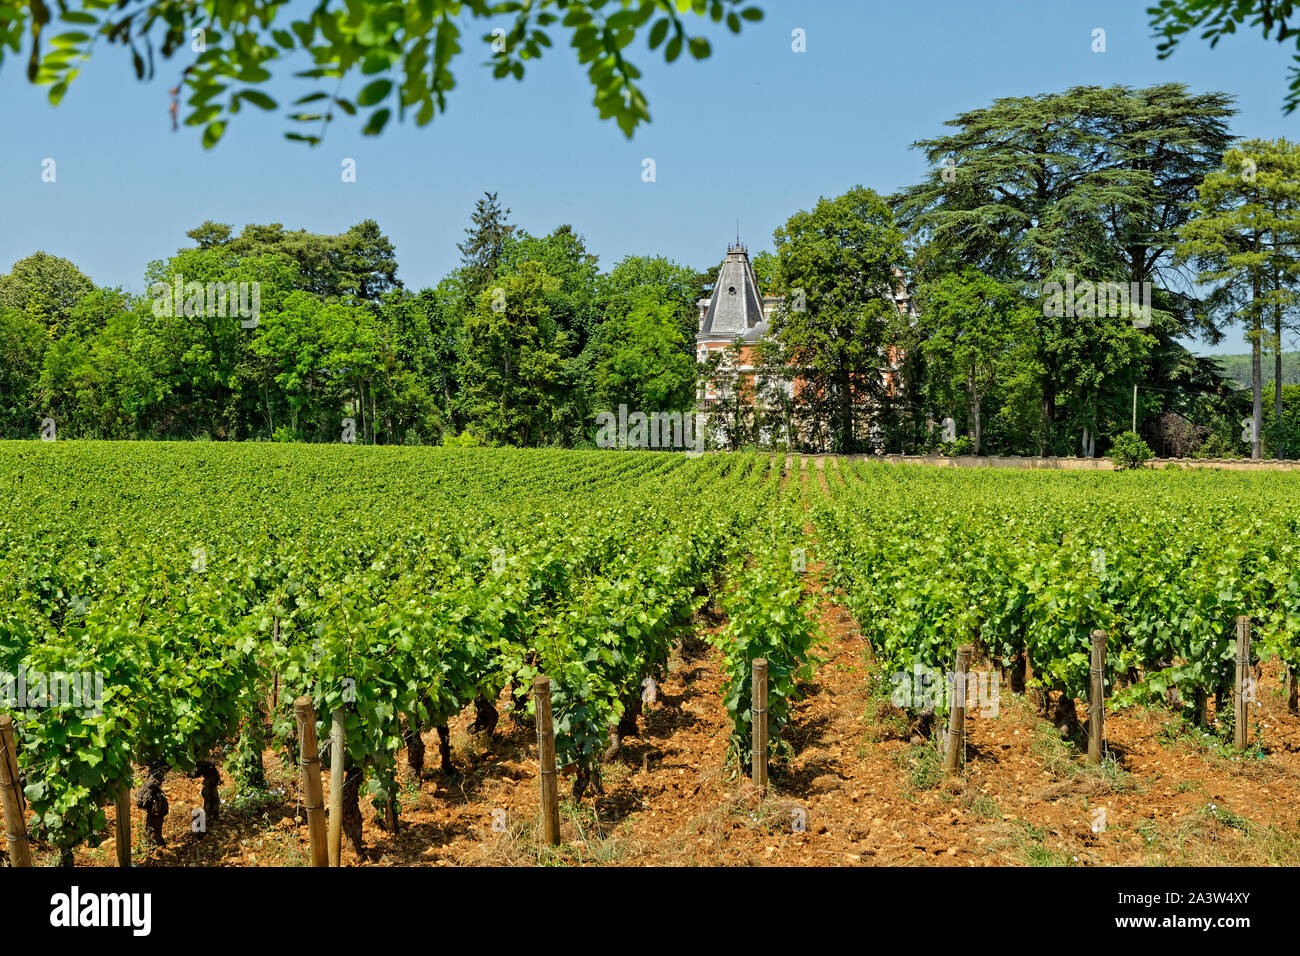 Vignes au village viticole de nuits Saint-Georges en Bourgogne, Bourgogne Franche-Comté , France. Banque D'Images